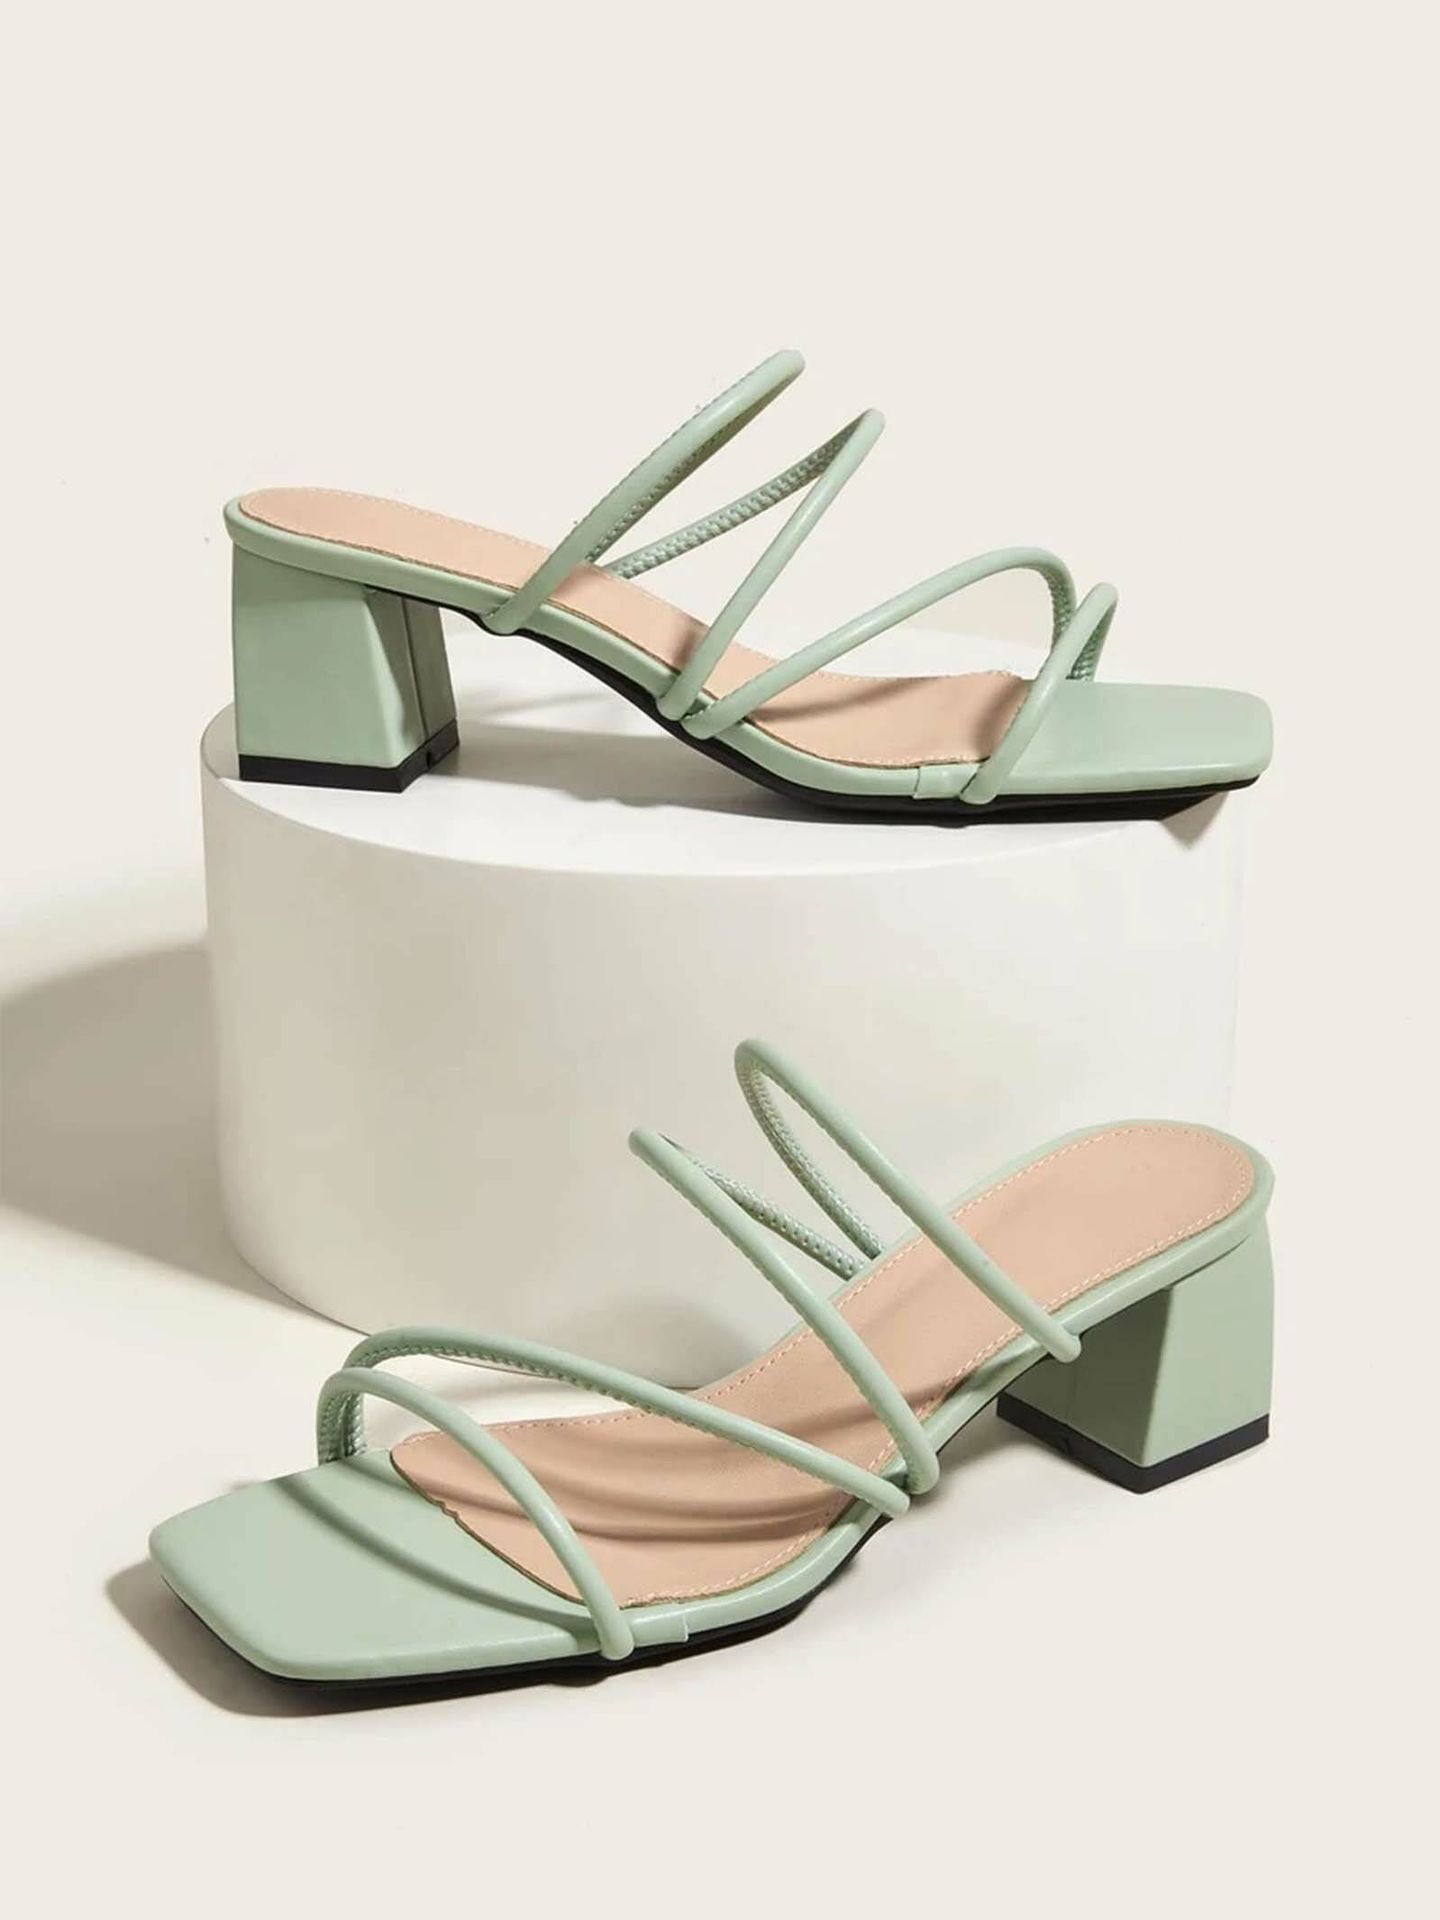 Las sandalias de tacón cómodo de Eugenia Martínez de Irujo son el zapato que más usarás en agosto. (Shein/Cortesía)